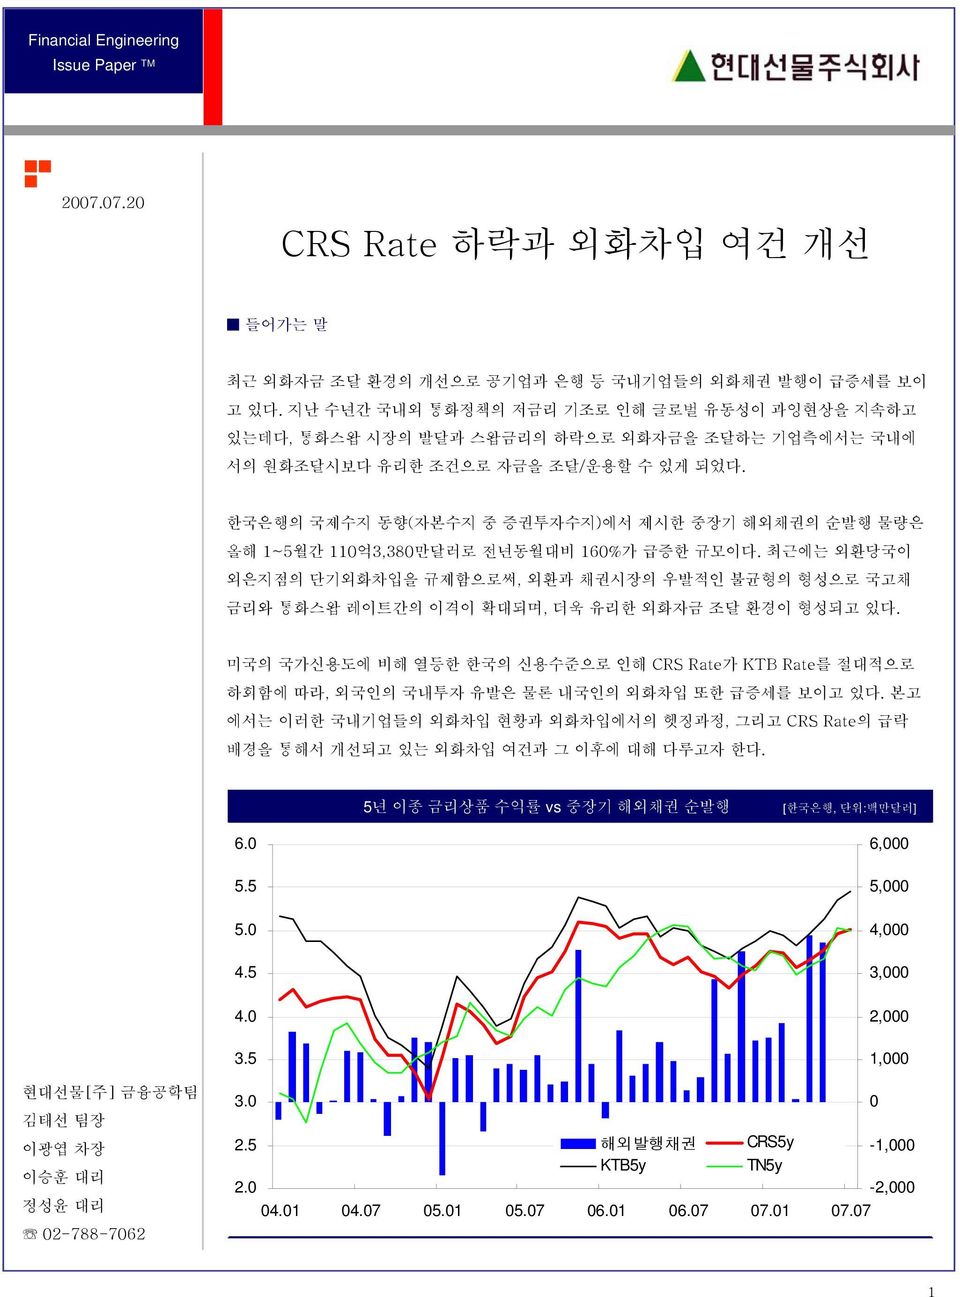 한국은행의 국제수지 동향(자본수지 중 증권투자수지)에서 제시한 중장기 해외채권의 순발행 물량은 올해 1~월간 1억,80만달러로 전년동월대비 160%가 급증한 규모이다.